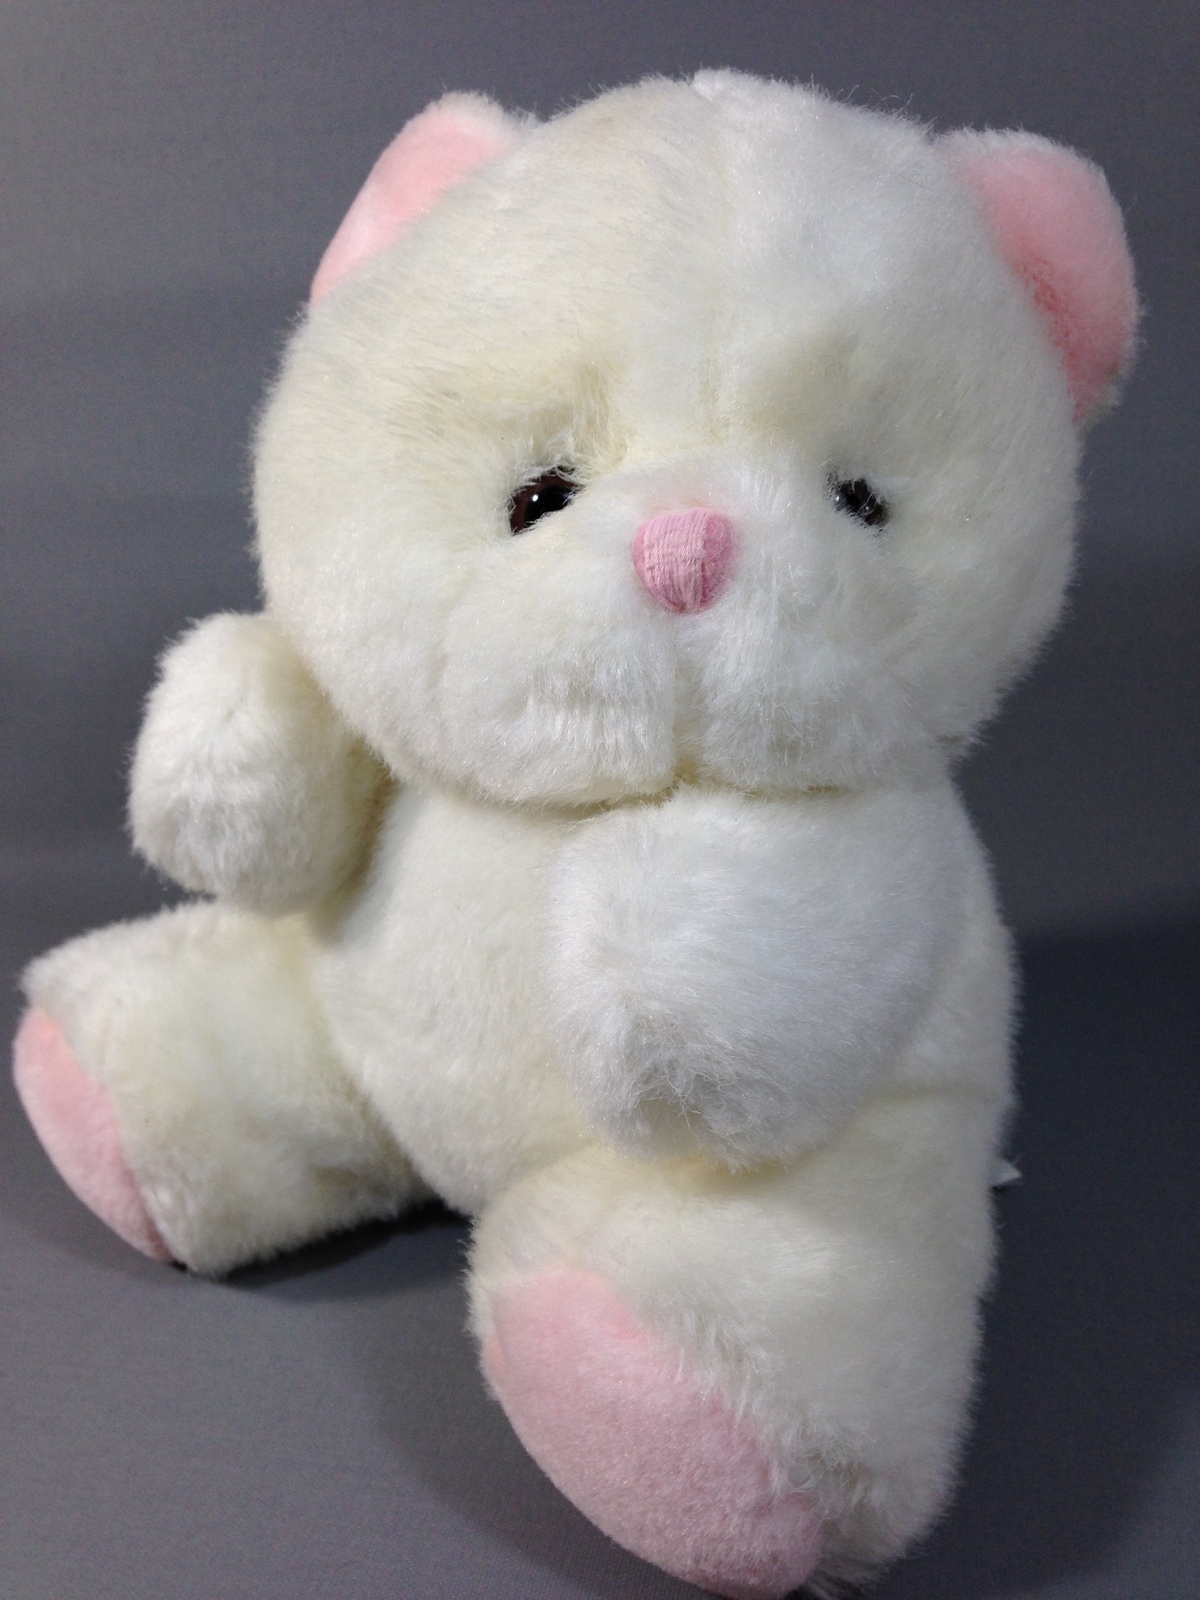 chosun teddy bear